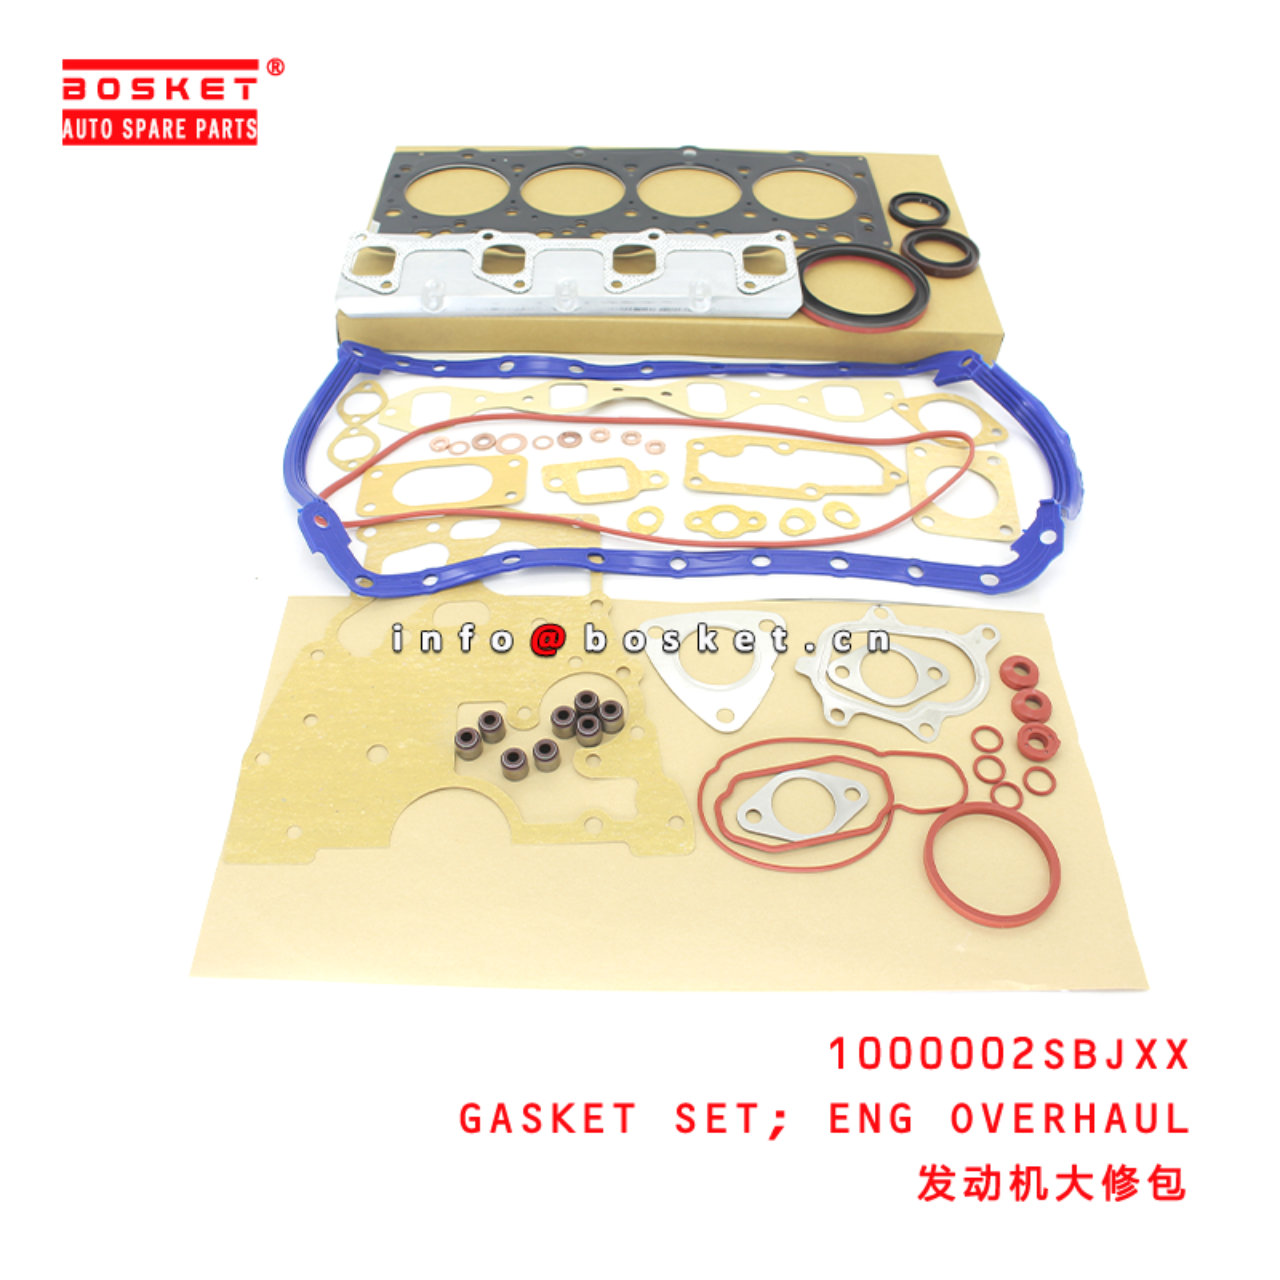 1000002SBJXX Engine Overhaul Gasket Set Suitable for ISUZU JMC 凯运欧三